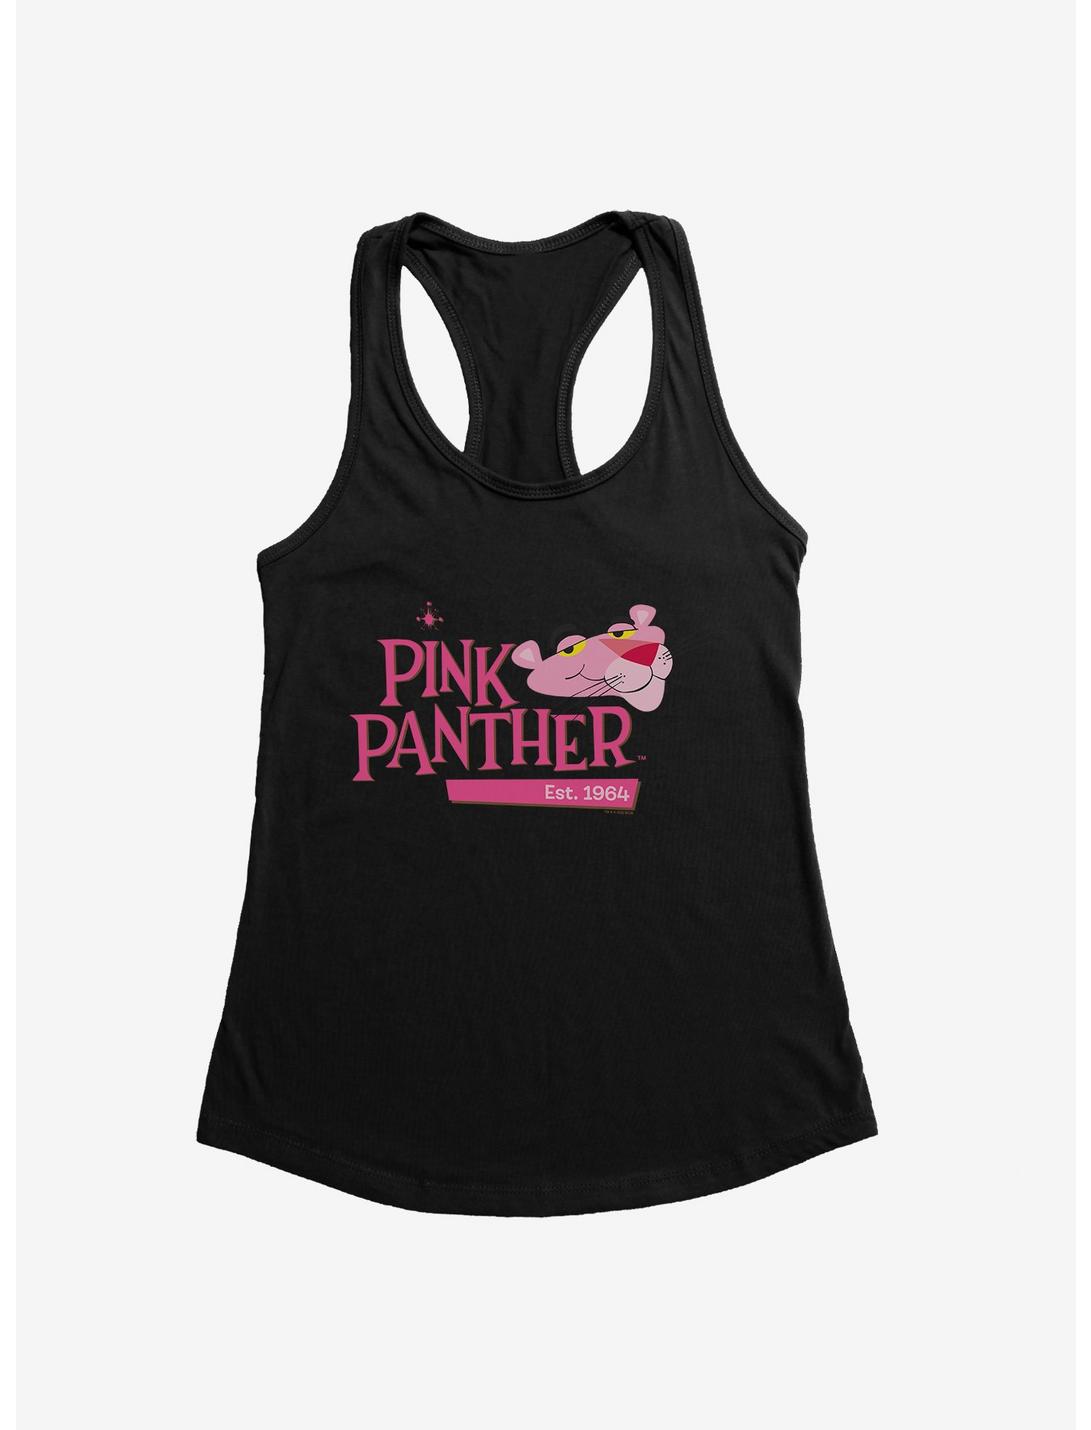 Pink Panther Est 1964 Womens Tank Top, , hi-res